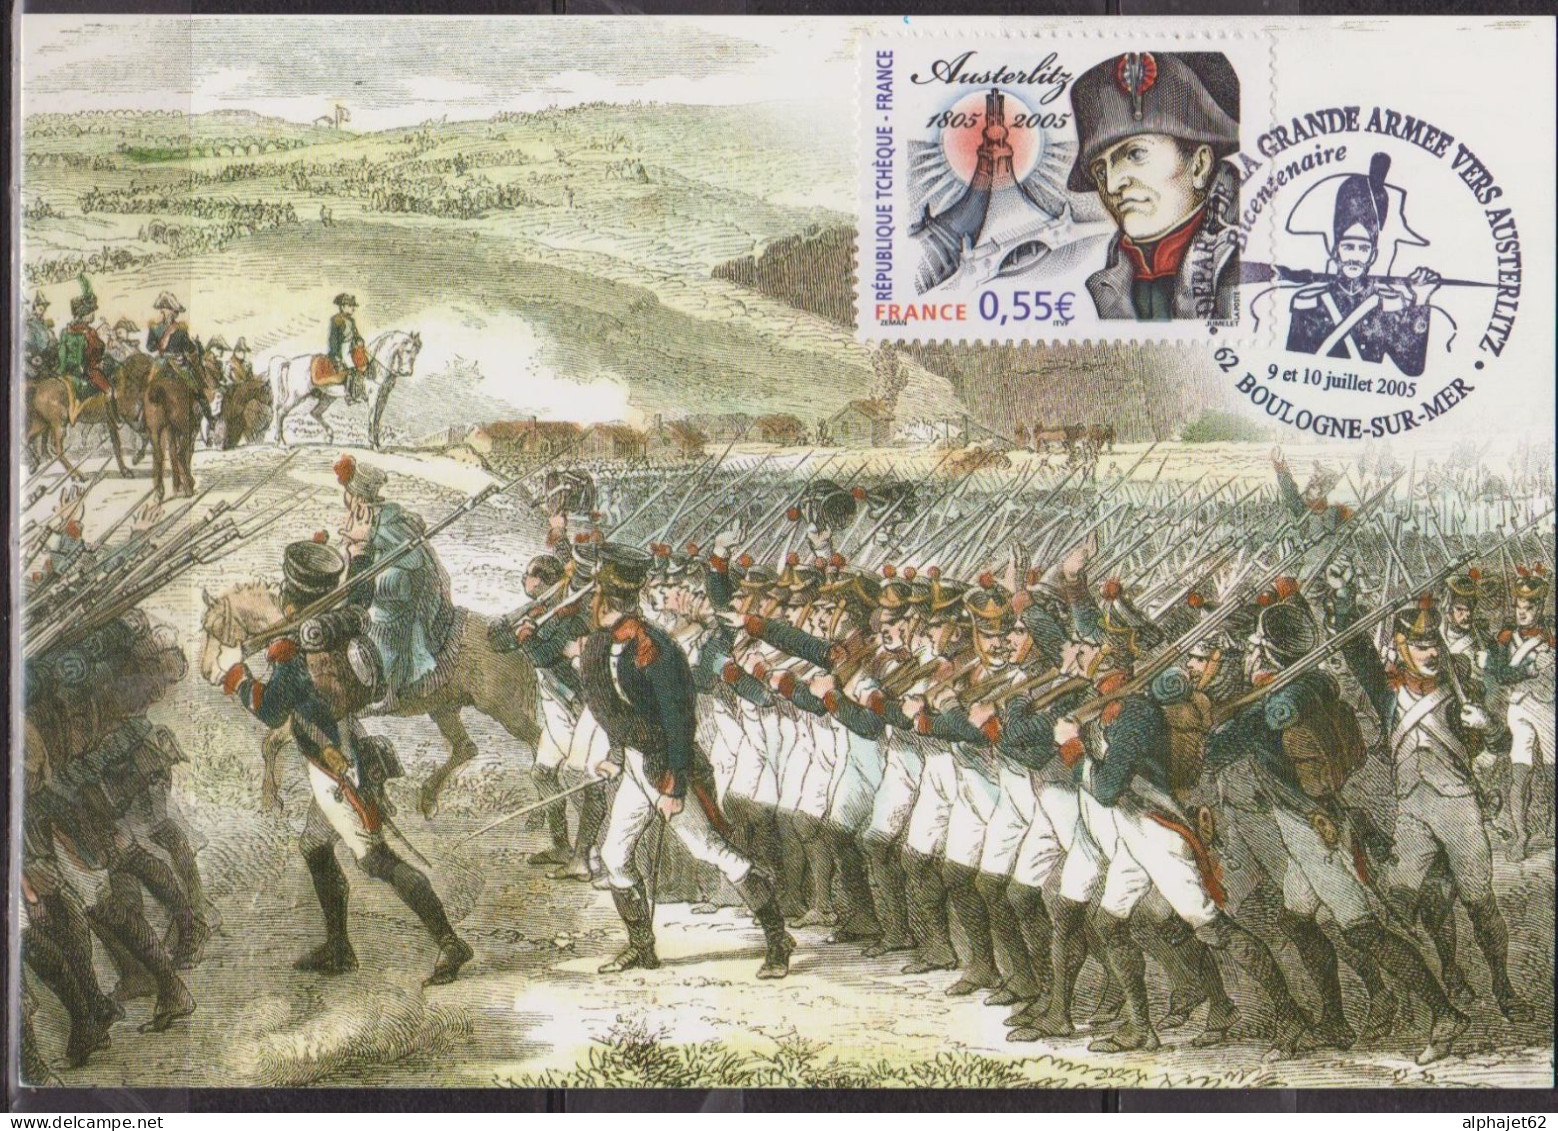 Napoléon - Austerlitz - Camp De Boulogne - FRANCE - Carte Maximum - Grande Armée - Boulogne Sur Mer - N° 3782 - 2005 - Napoleon